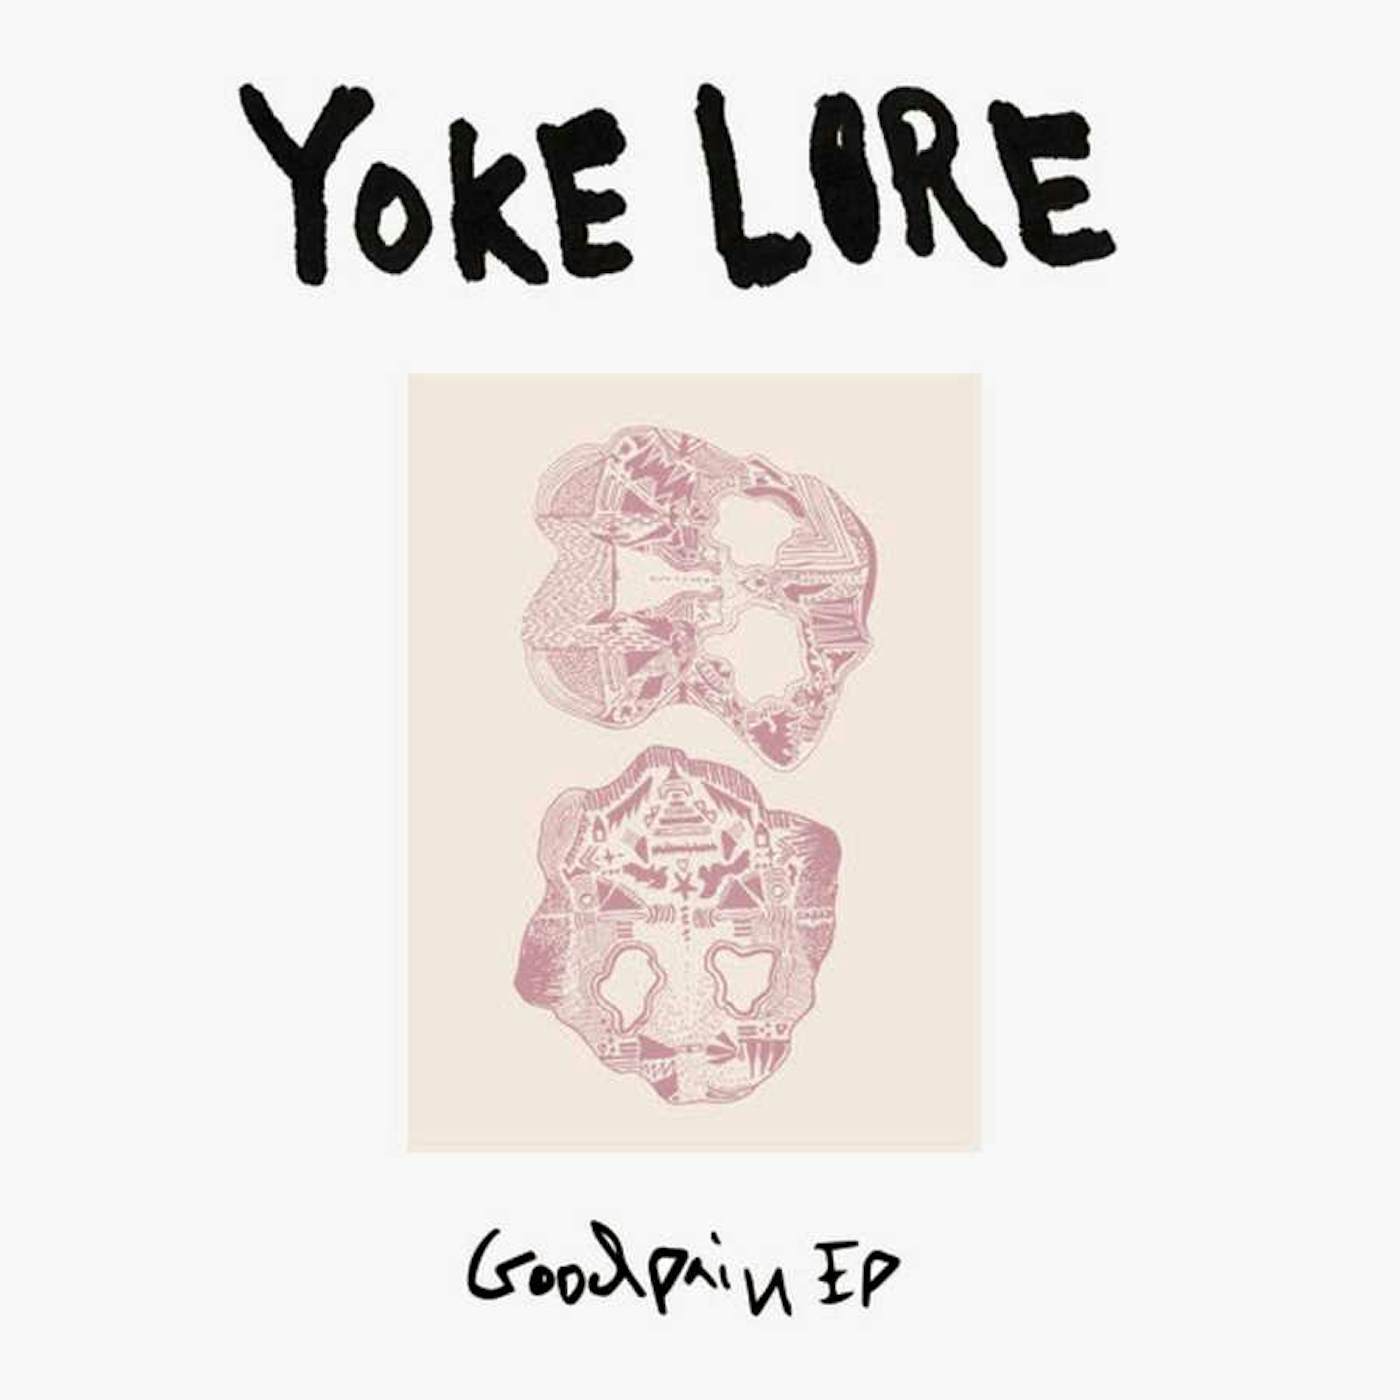 Yoke Lore Goodpain Ep (10 ) Vinyl Record